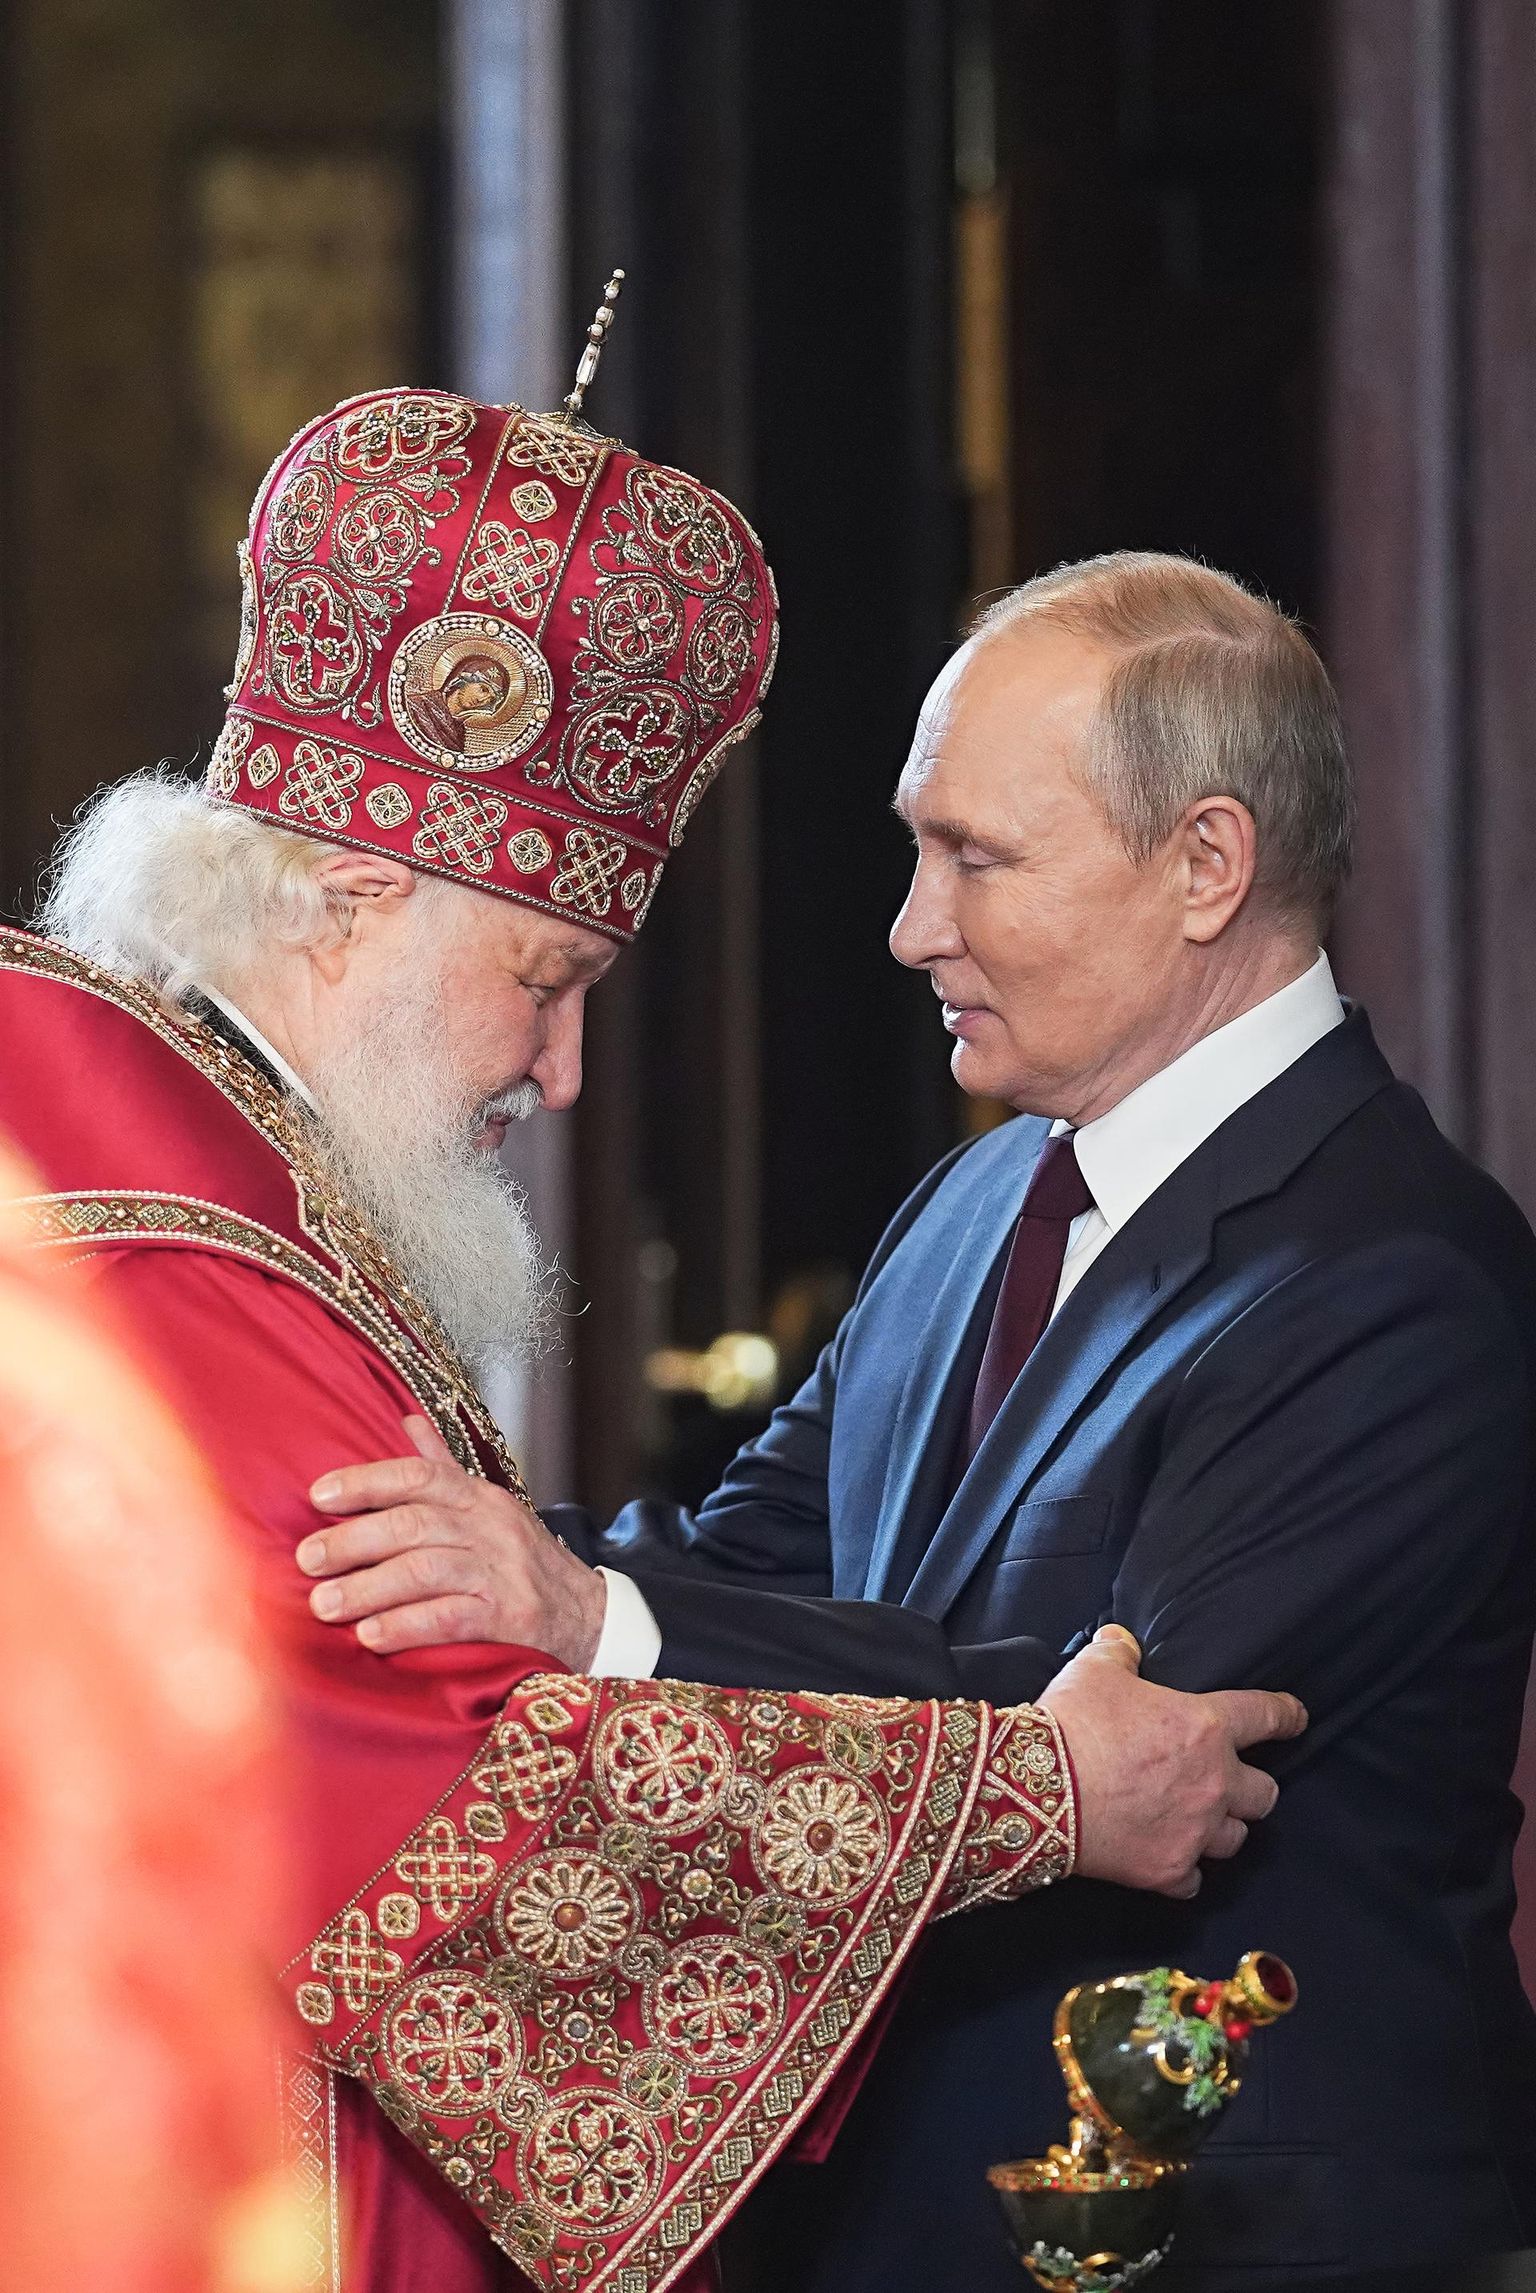 President Putin annab relvad ja patriarh Kirill annab ideoloogia, on väitnud õigeusu eestkõneleja Cyril Hovorun. Ülestõusmispüha jumalateenistus Moskvas Päästja Kristuse katedraalis.